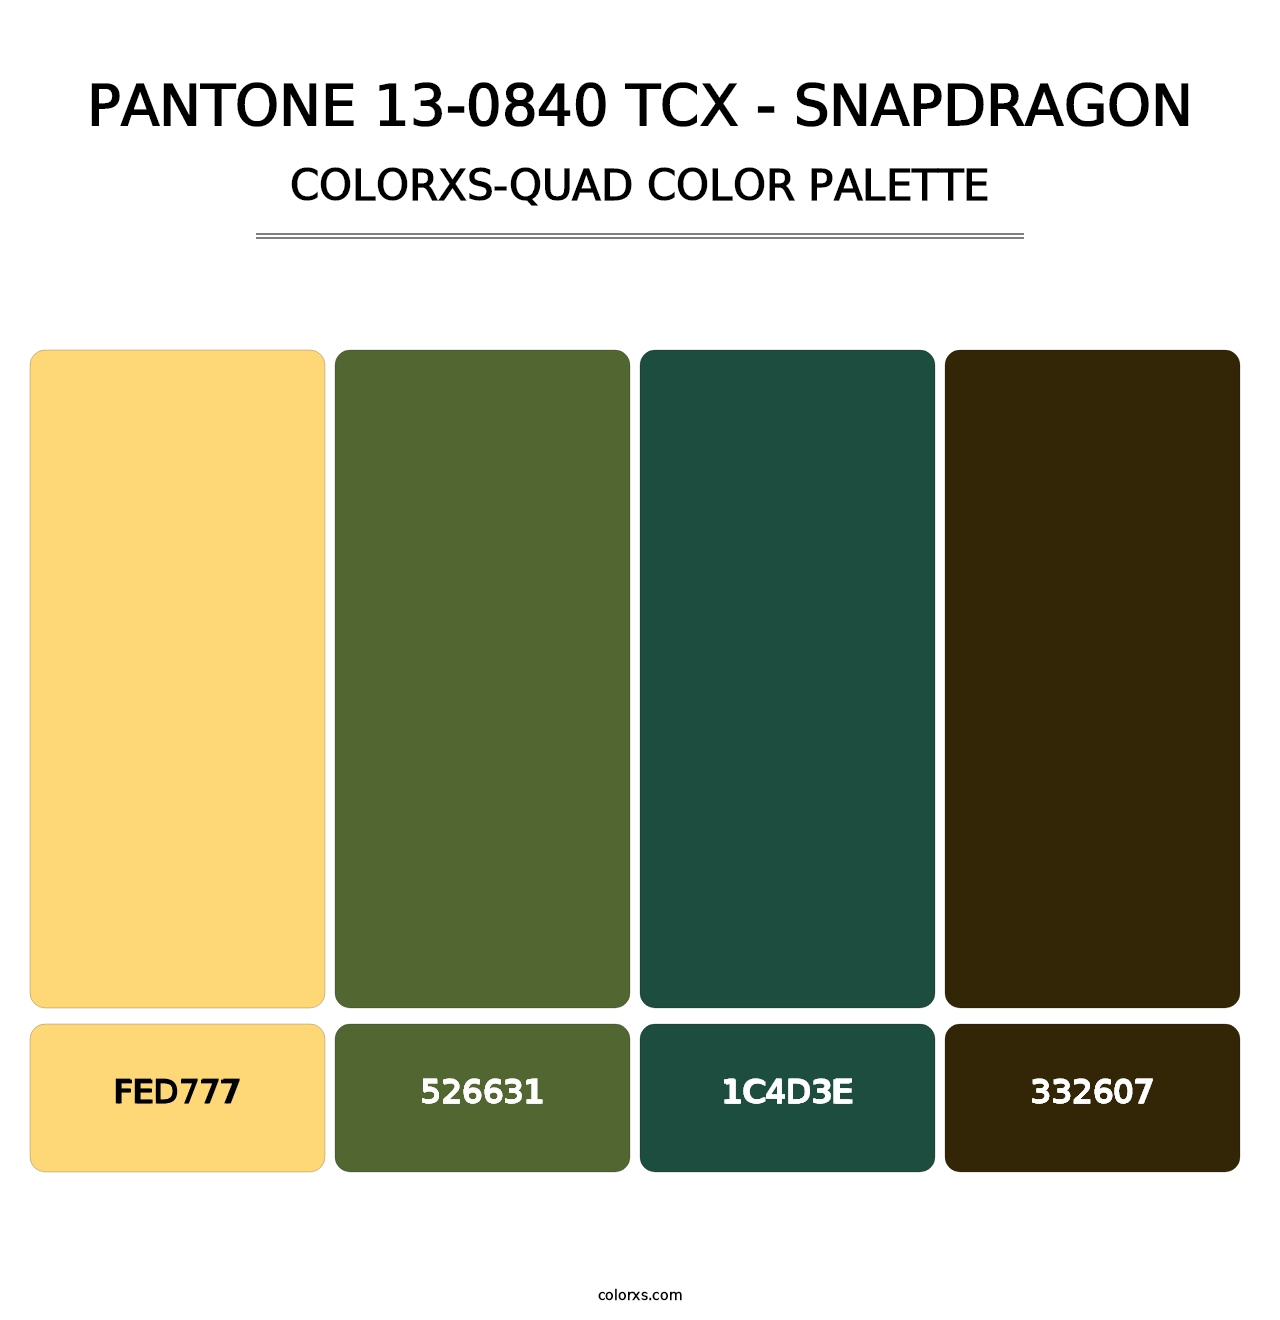 PANTONE 13-0840 TCX - Snapdragon - Colorxs Quad Palette